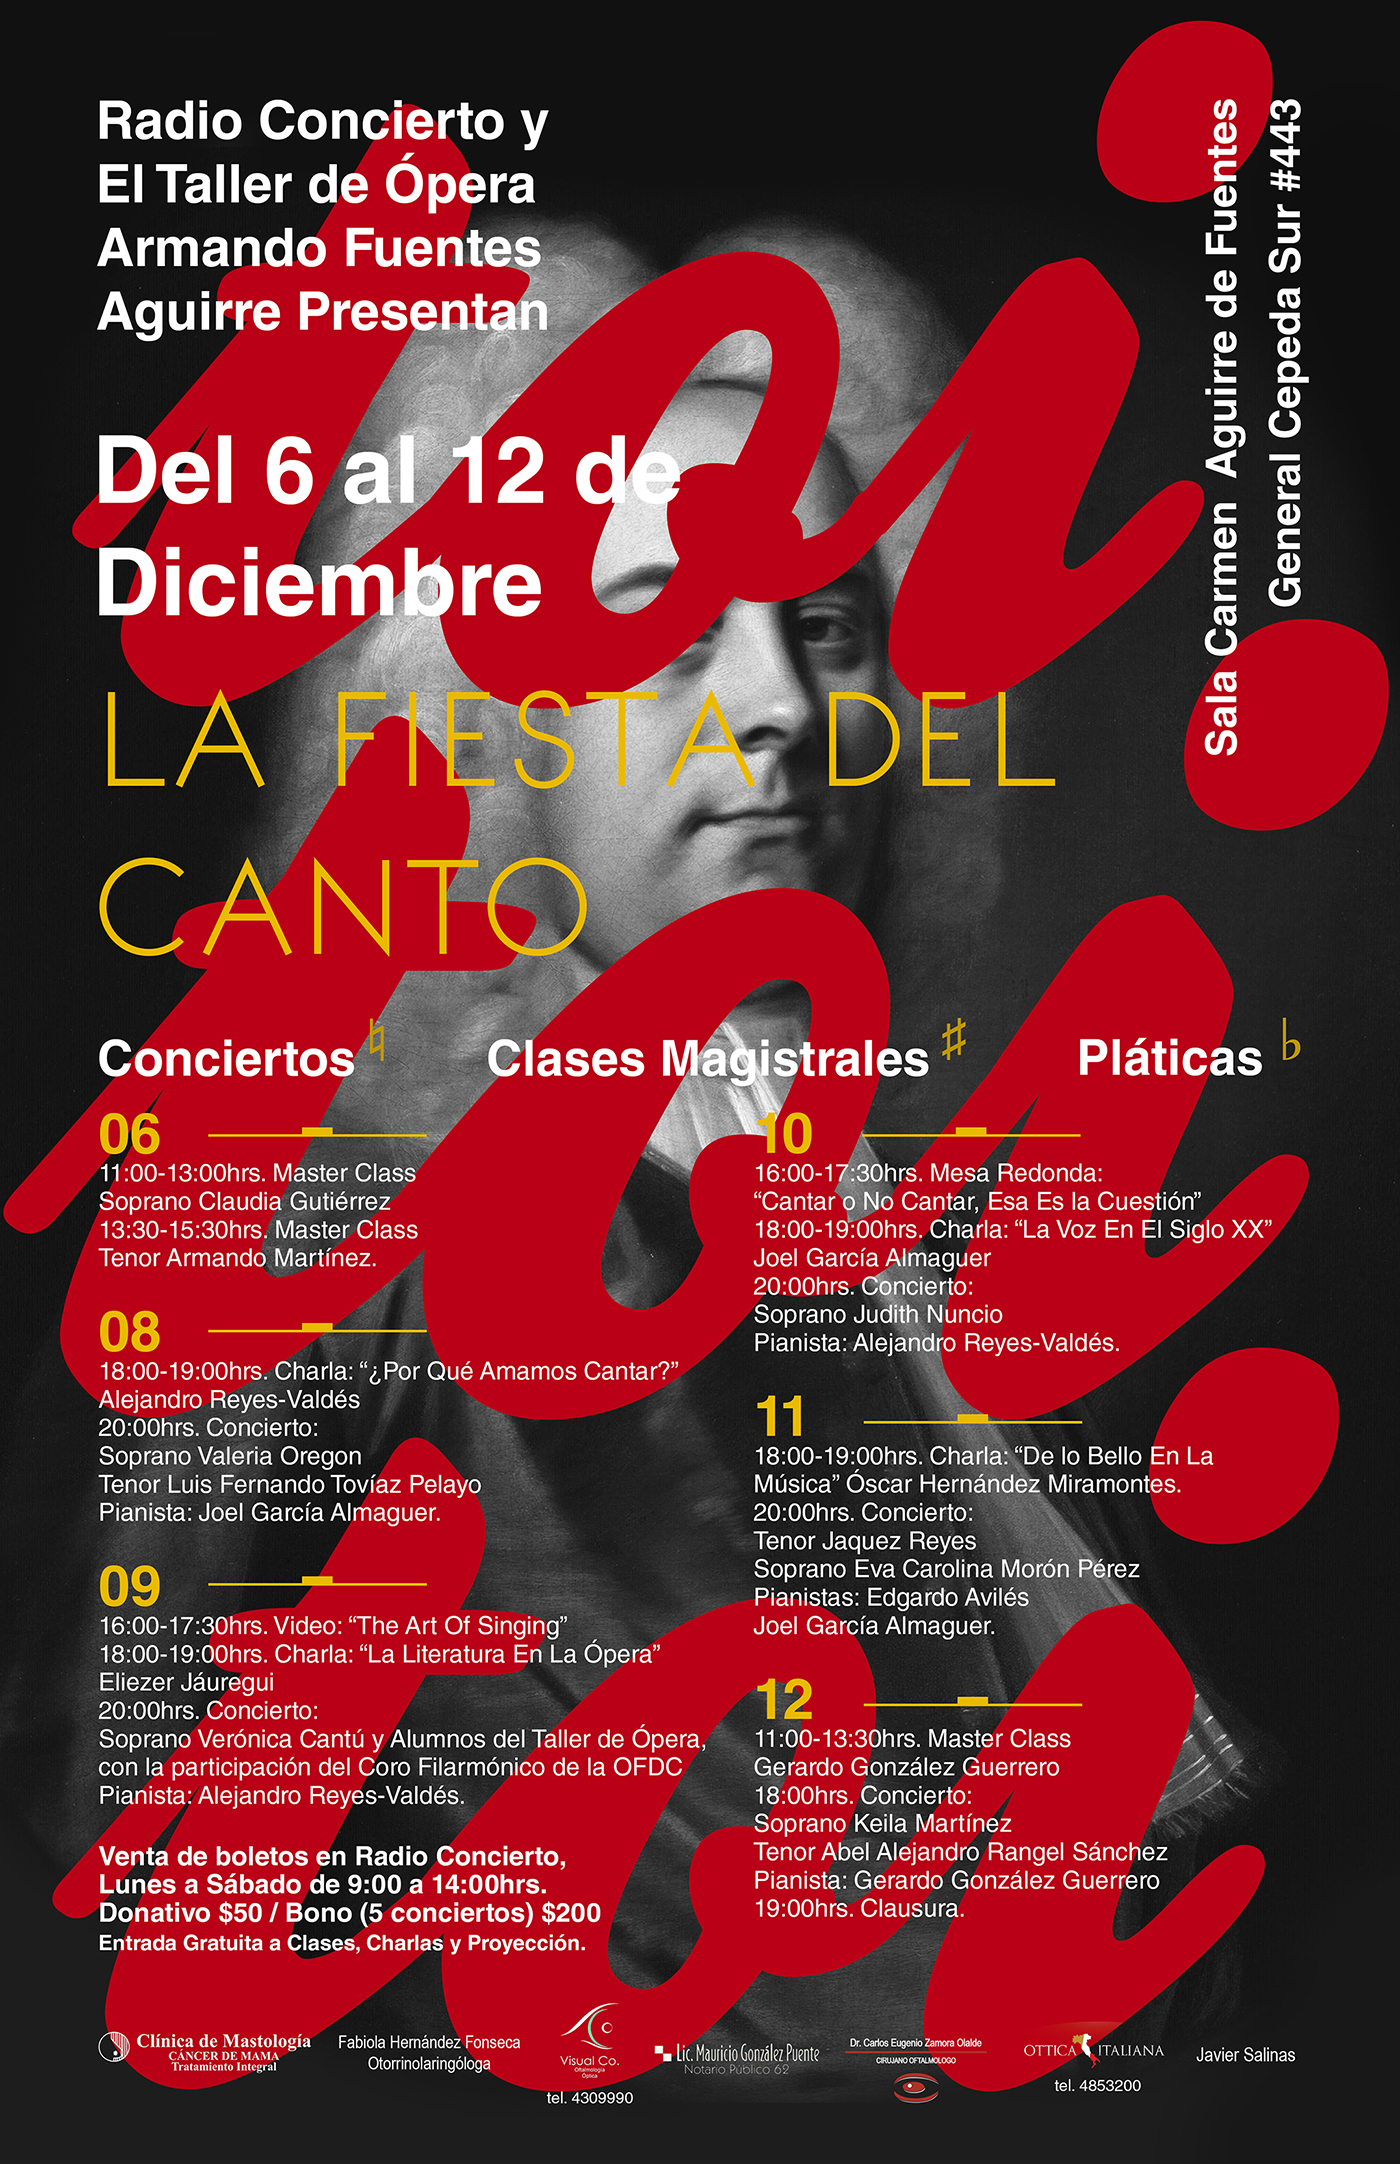 poster design festival music Classical toitoitoi opera bach mozart handel